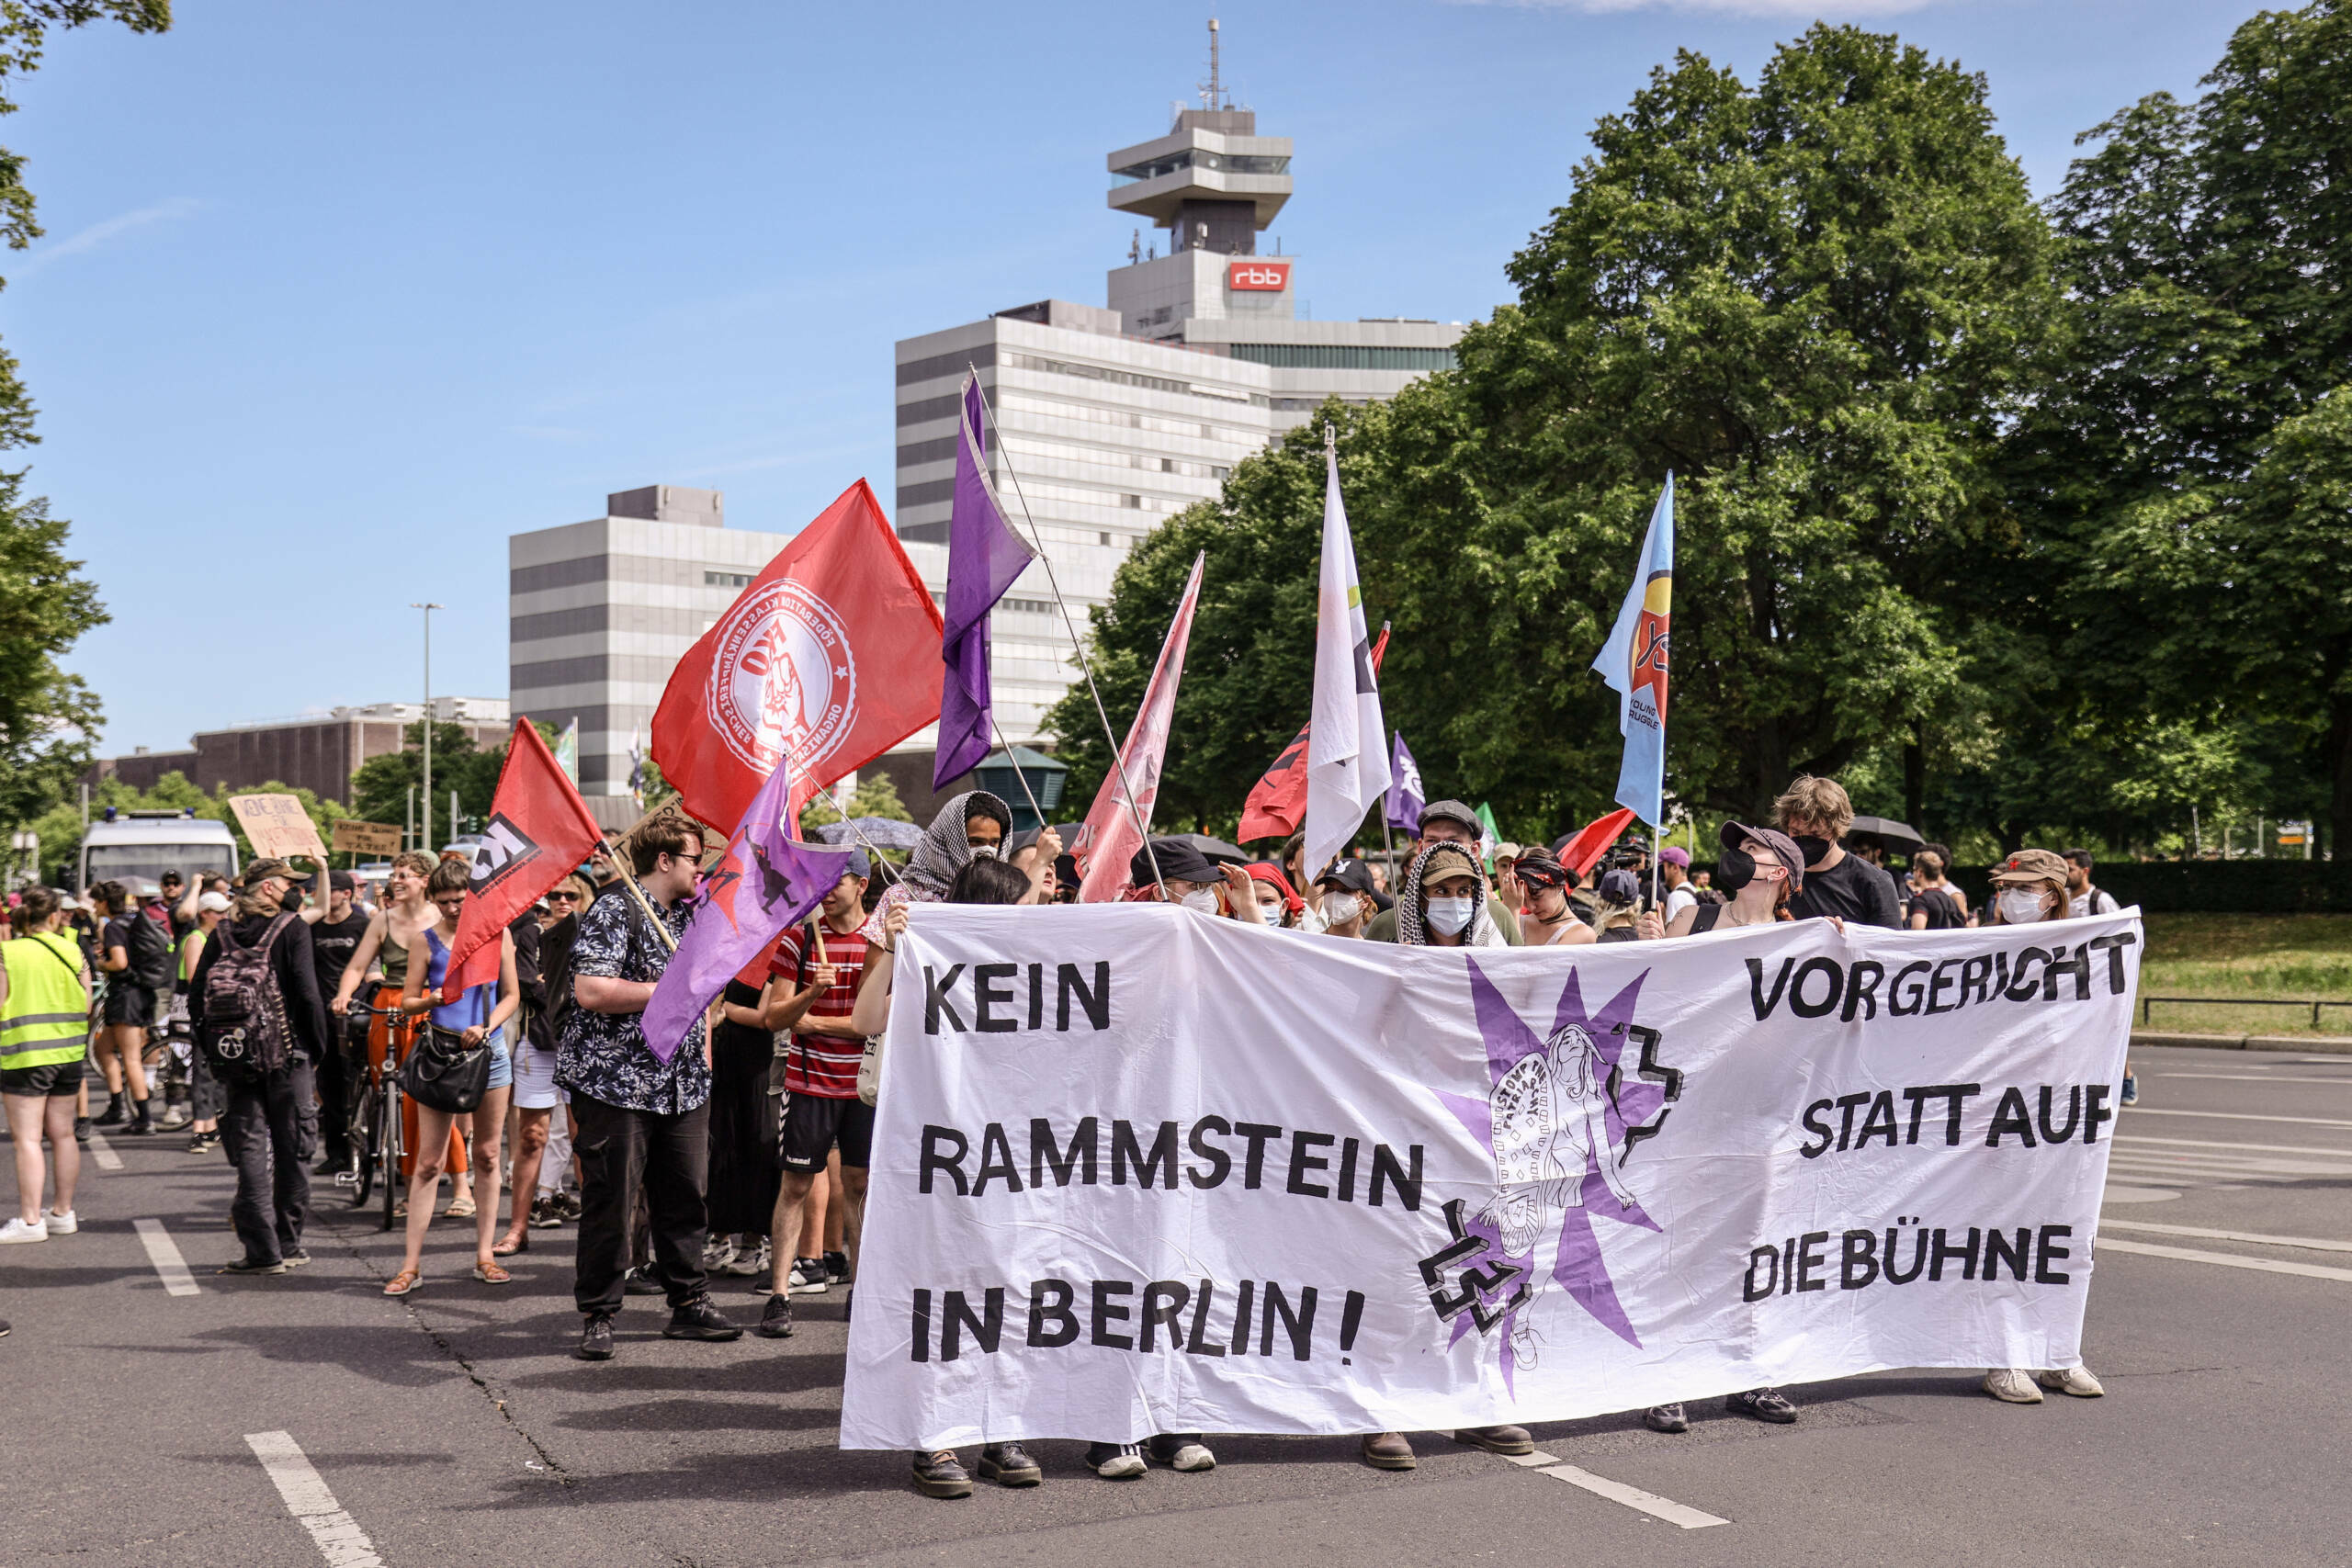 Galerie: Die besten Fotos der Anti-Rammstein-Demo in Berlin